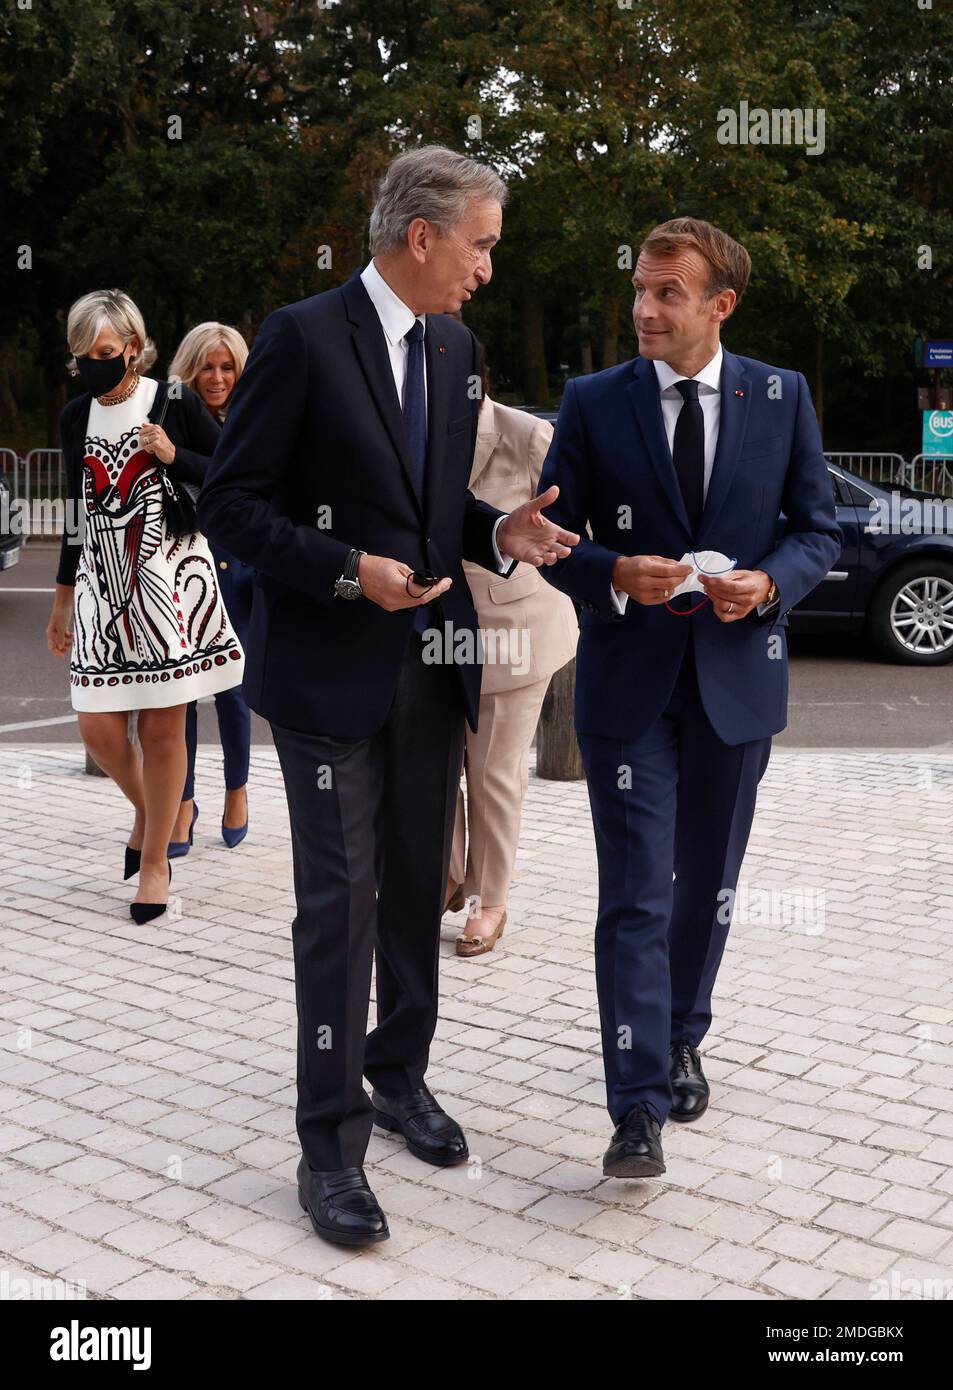 LVMH propose de vivre le rêve Louis Vuitton à moindre coût